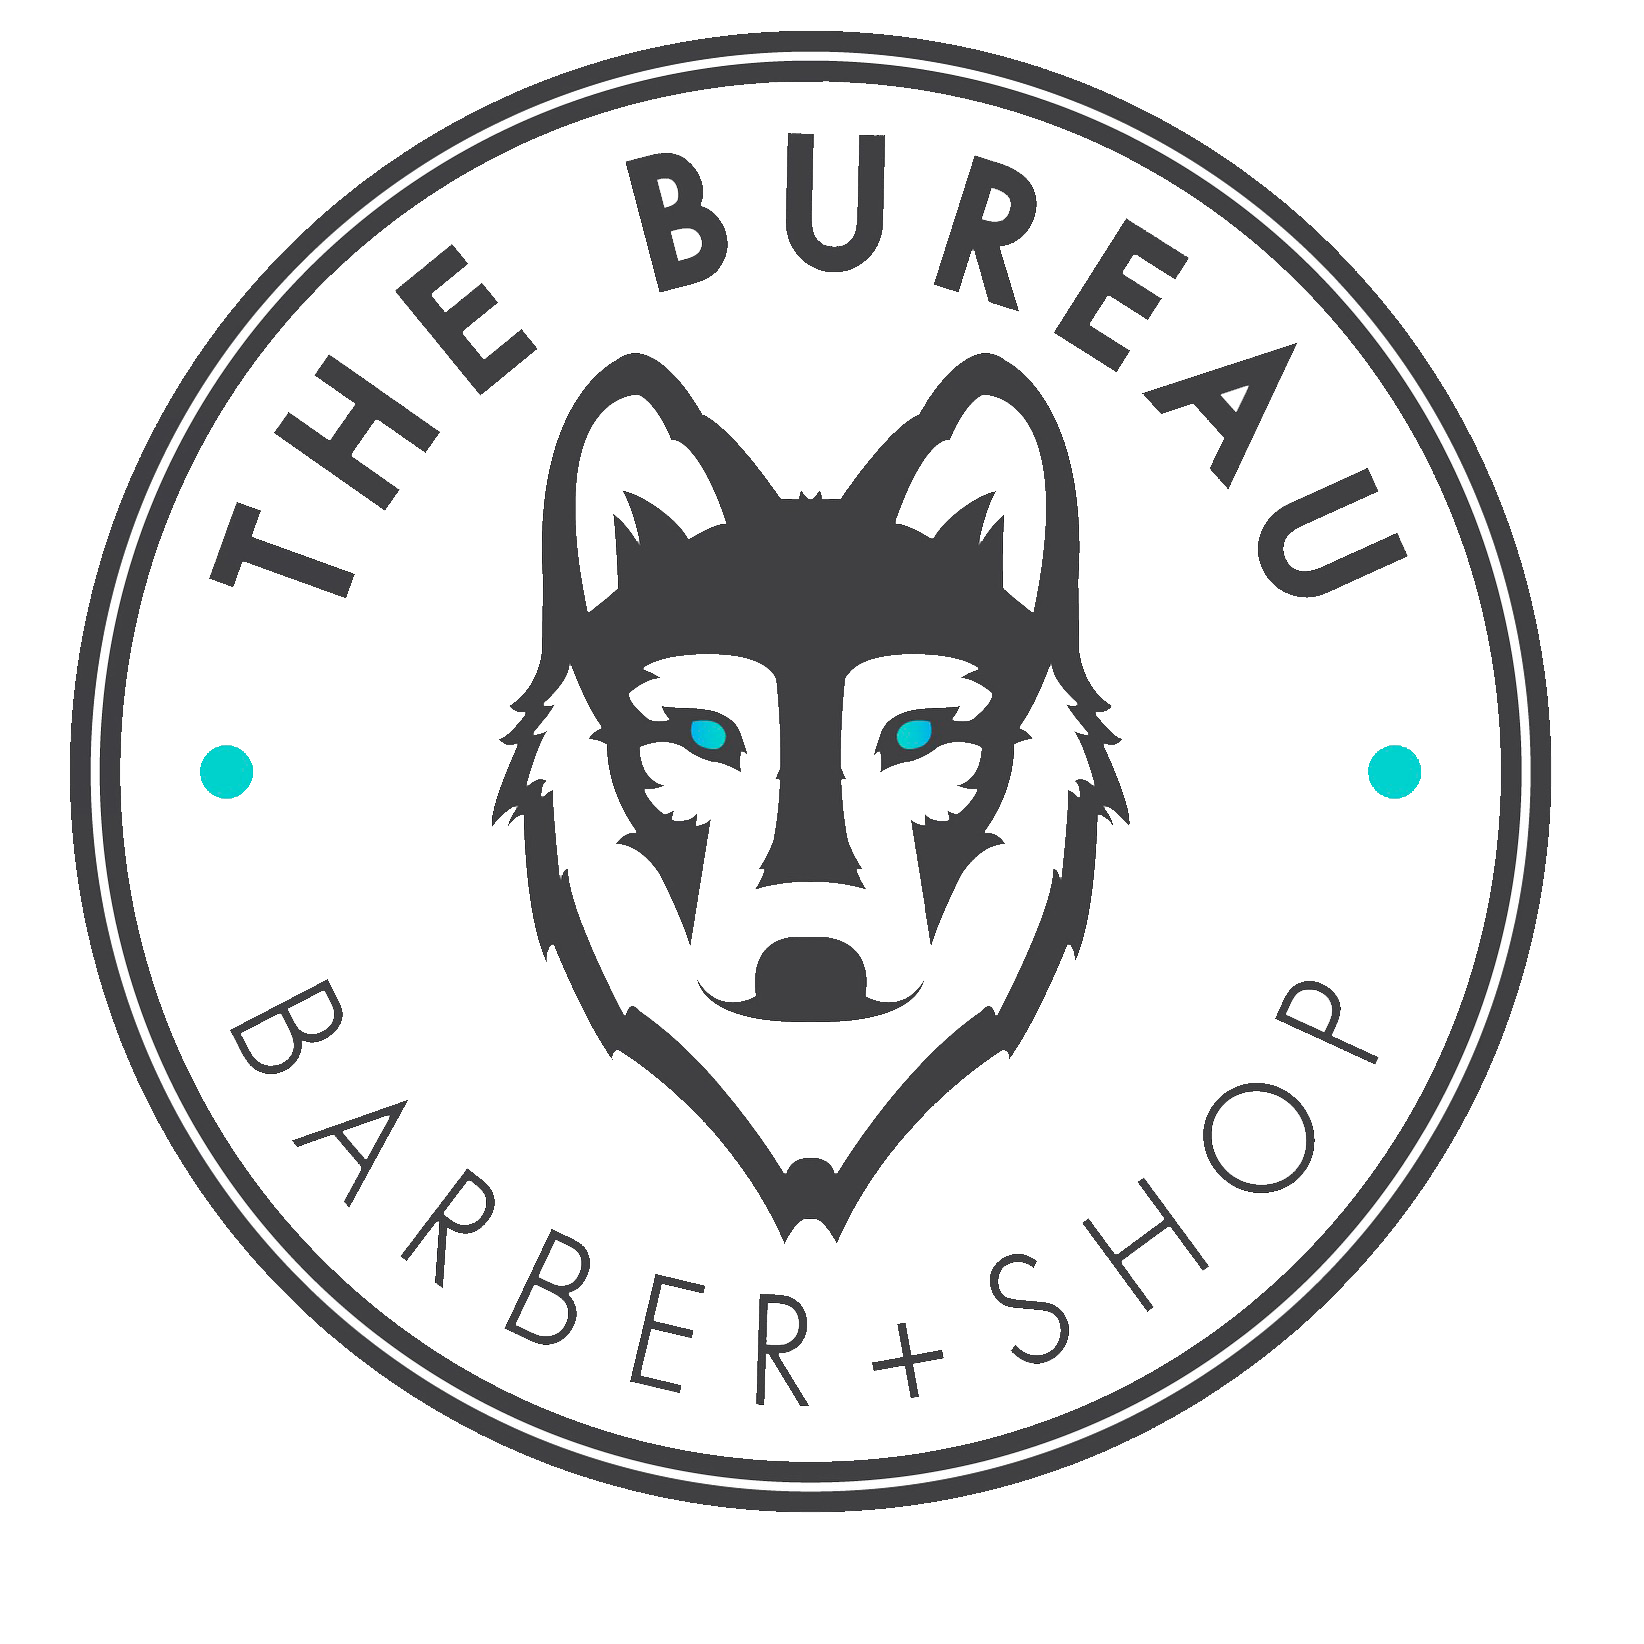 The Bureau Barber + Shop